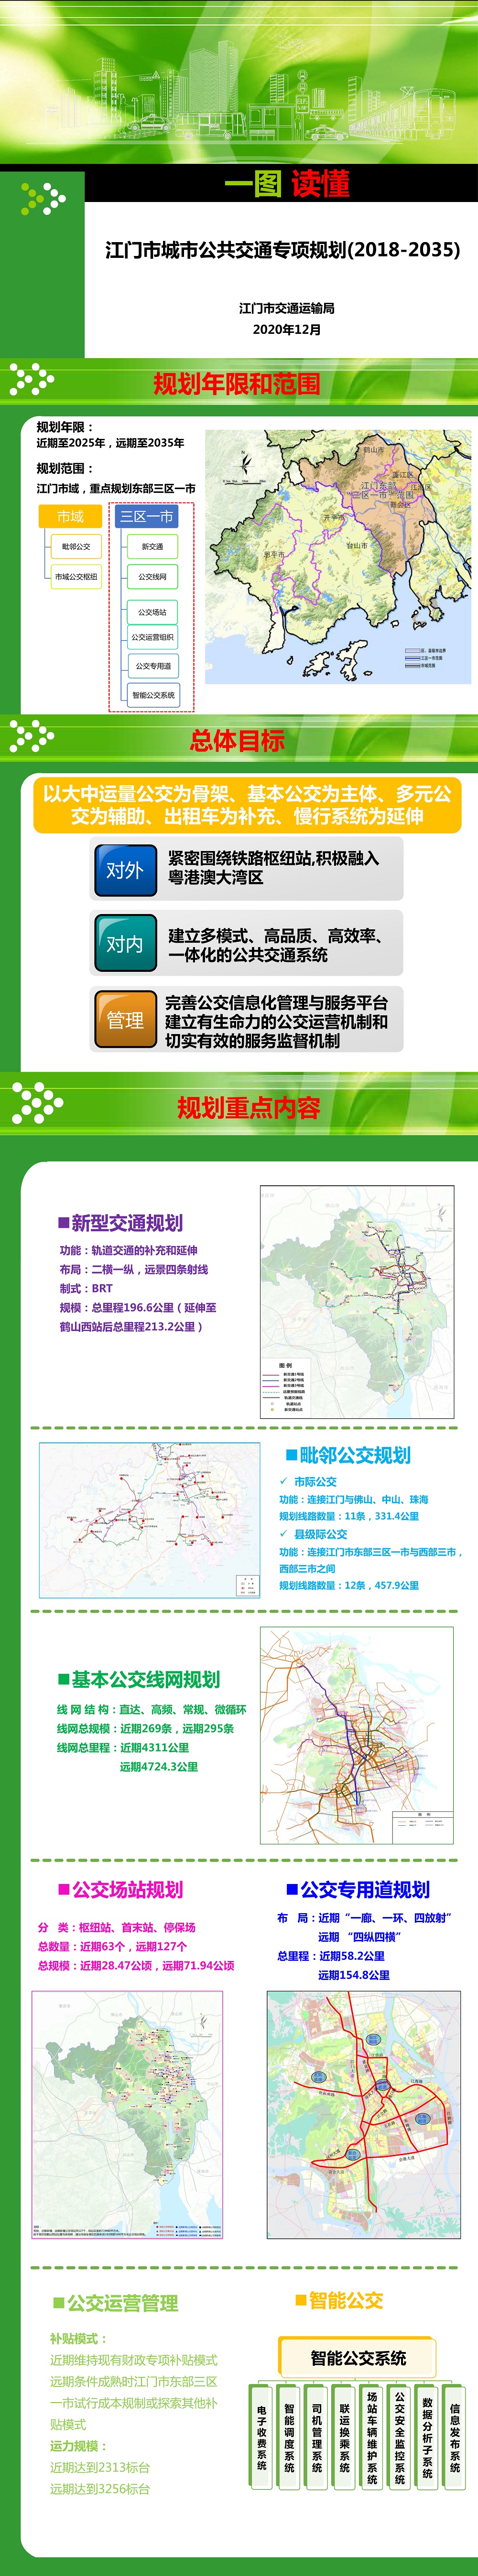 图解《江门市城市公共交通专项规划（2018-2035）》.jpg